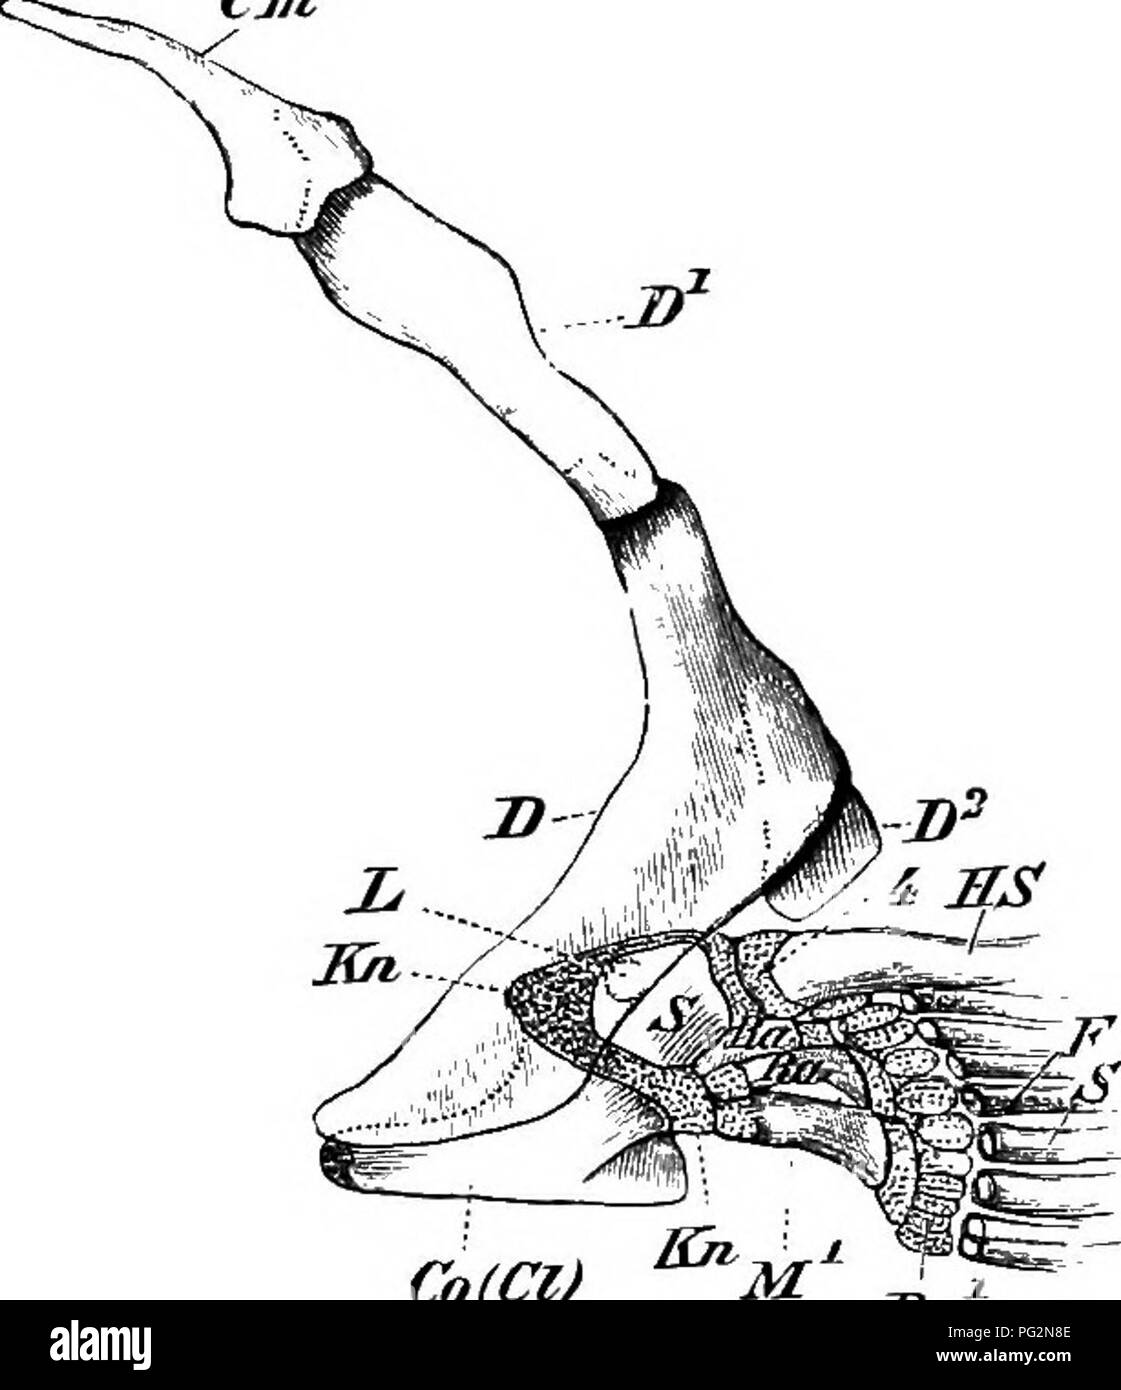 . Elemente der vergleichenden Anatomie der Wirbeltiere. Anatomie, Vergleichende. Brust-BOGEN 107 Cm. und äußeren Umfang des (primären) arch, conveii Artikulationen auf den Arch, in dreschkorb Facetten auf der fin passen geformt wird, der Punkt, der die Trennung der Bogen in eine obere und eine untere dorsal ventral Abschnitt entnommen werden. Die ehemalige, die ausnahmsweise mit der Wirbelsäule (nämlich Raiidse), adr angeschlossen werden - reagiert auf einem schulterblatt, und die letzteren zu einem coracoicl plus procoracoid der höheren Vertebrata. Ich in Teleosts und knöcherne Oanoids der Knöchernen (sekundäre) arc Stockfoto